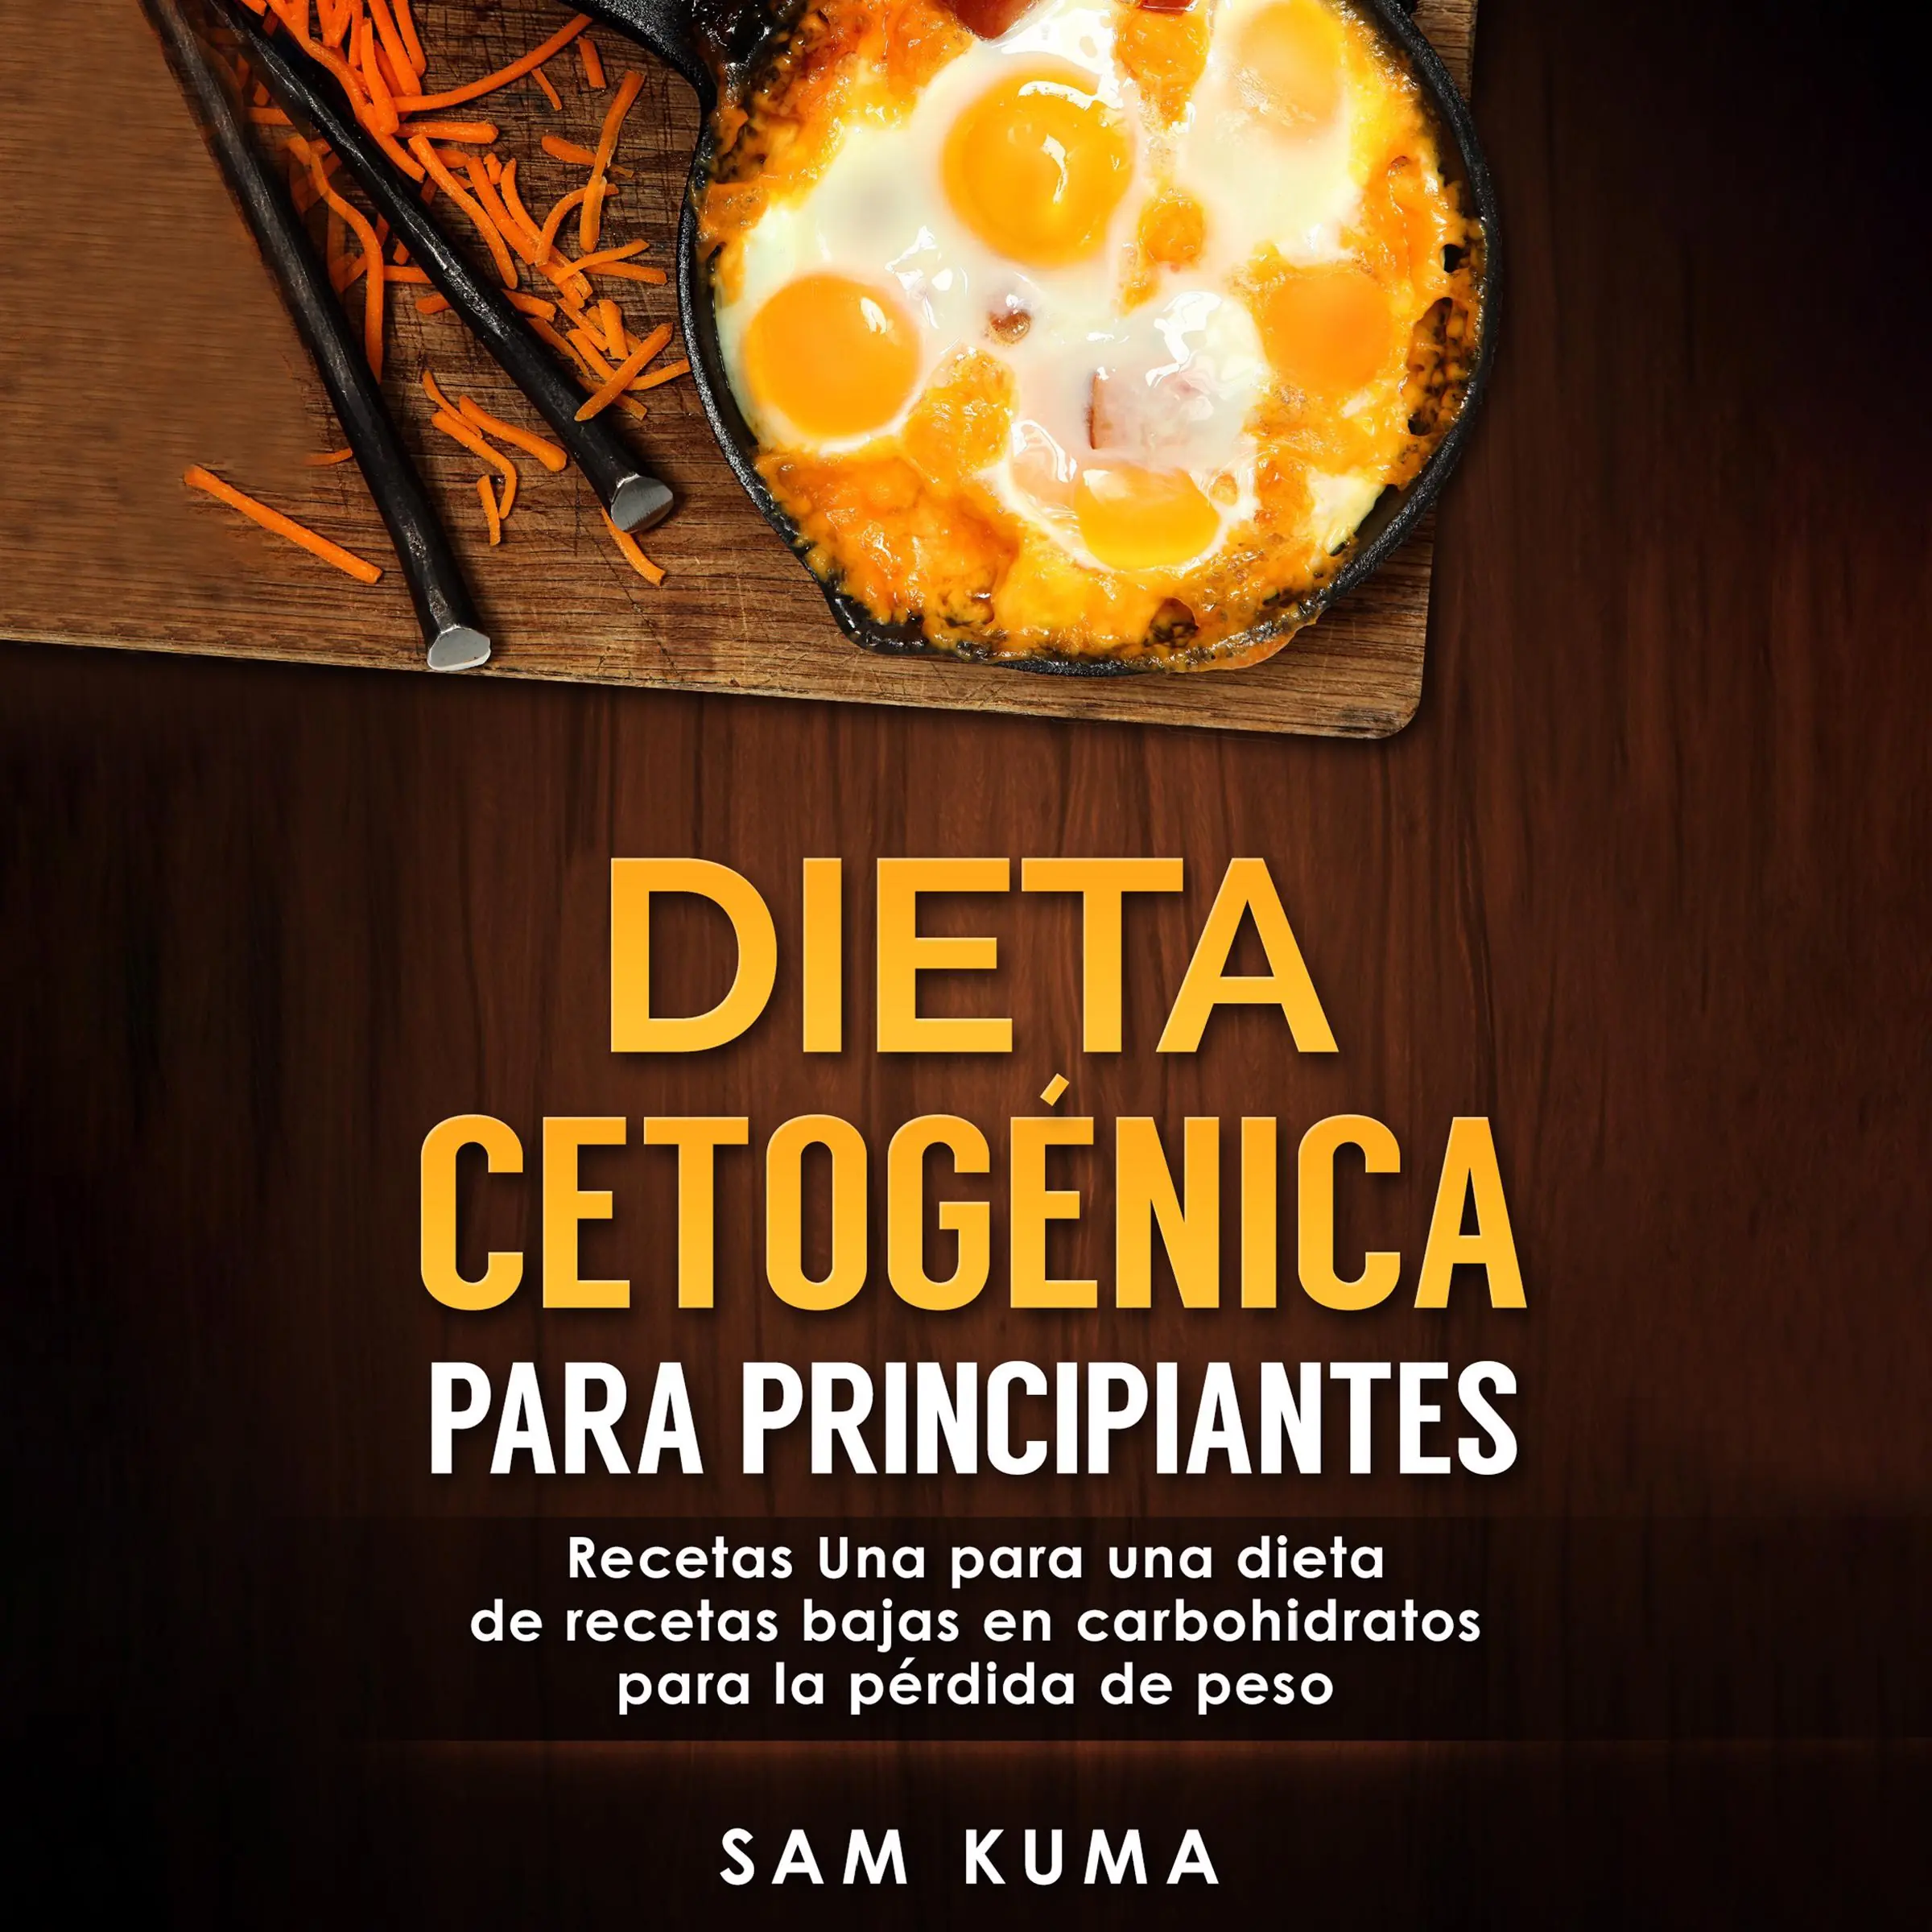 Dieta cetogénica para principiantes: Recetas Una para una dieta de recetas bajas en carbohidratos para la pérdida de peso (Spanish Edition) Audiobook by Sam Kuma